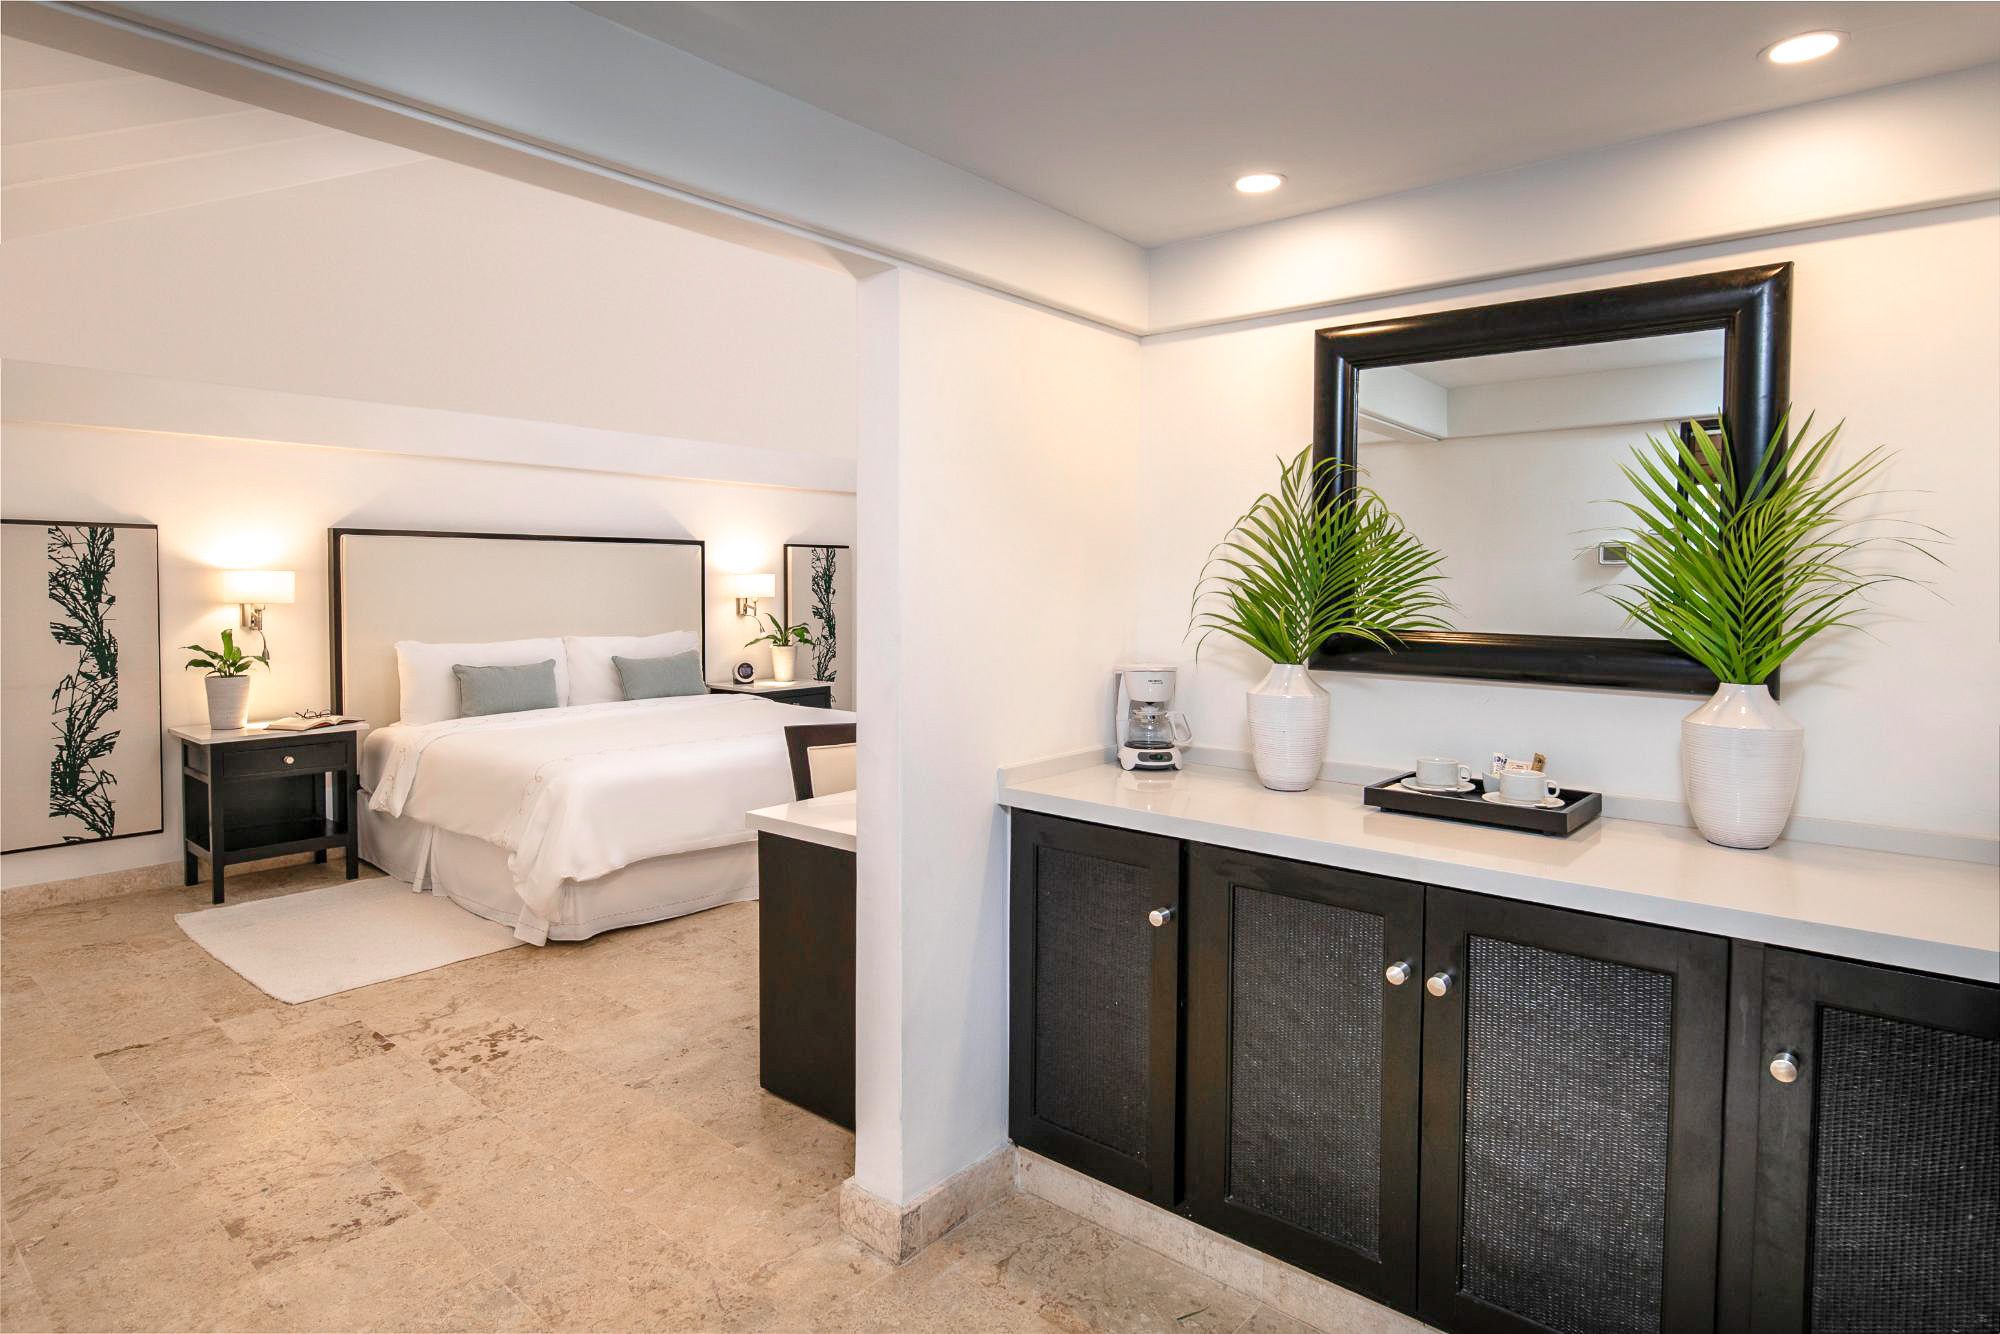 Luxury Superior Casita Room at Casa de Campo Resort & Villas.